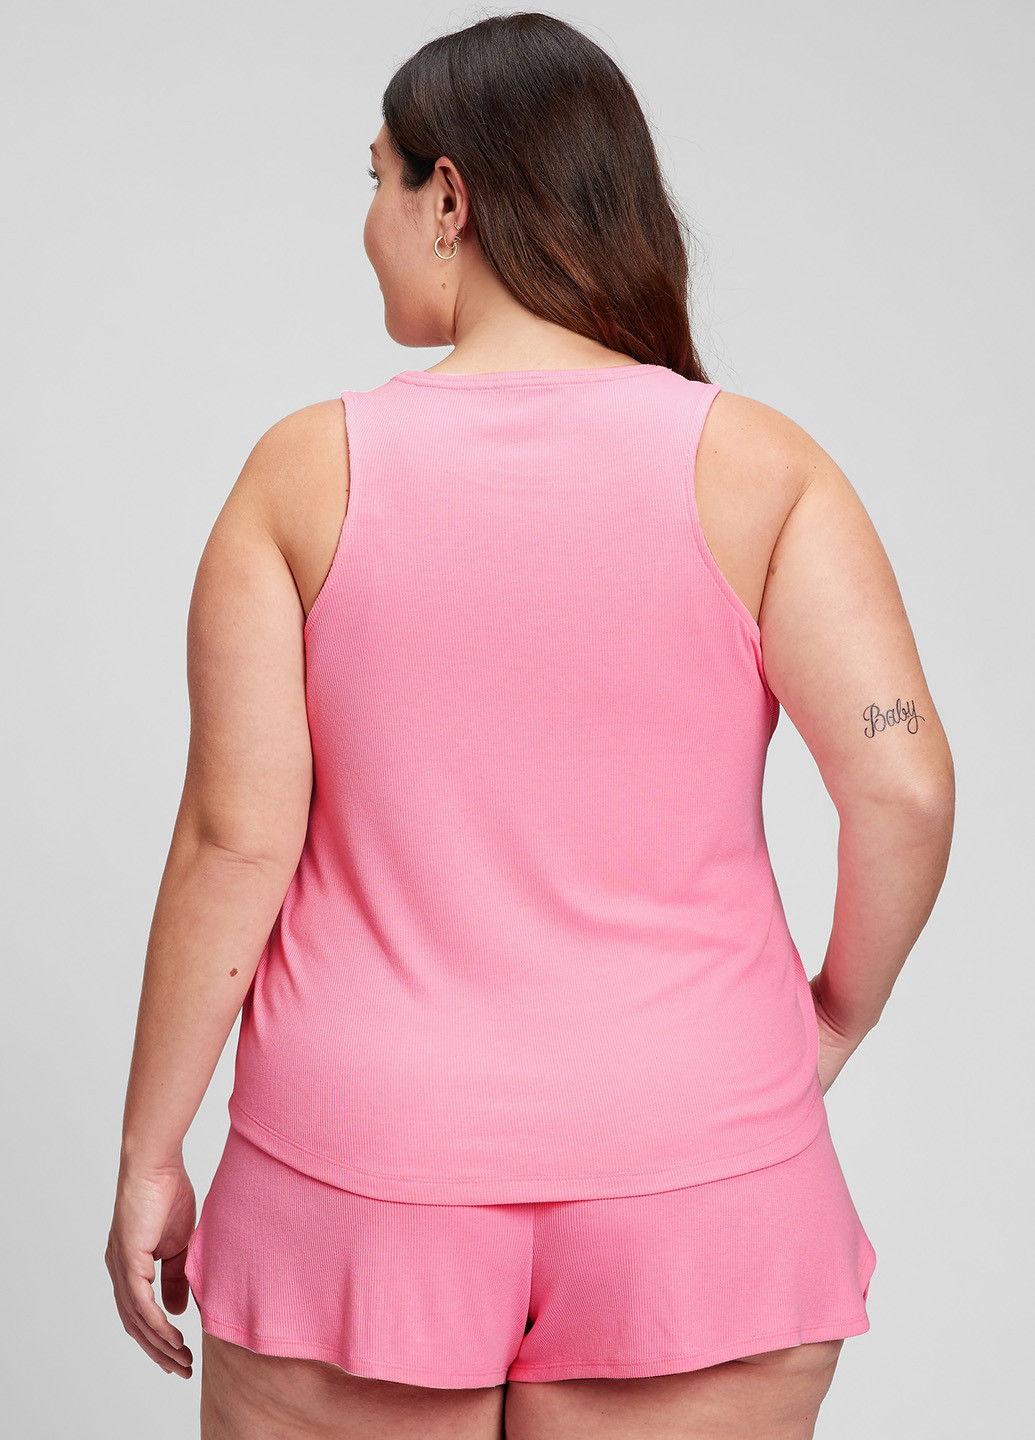 Розовая всесезон пижама (майка, шорты) майка + шорты Gap